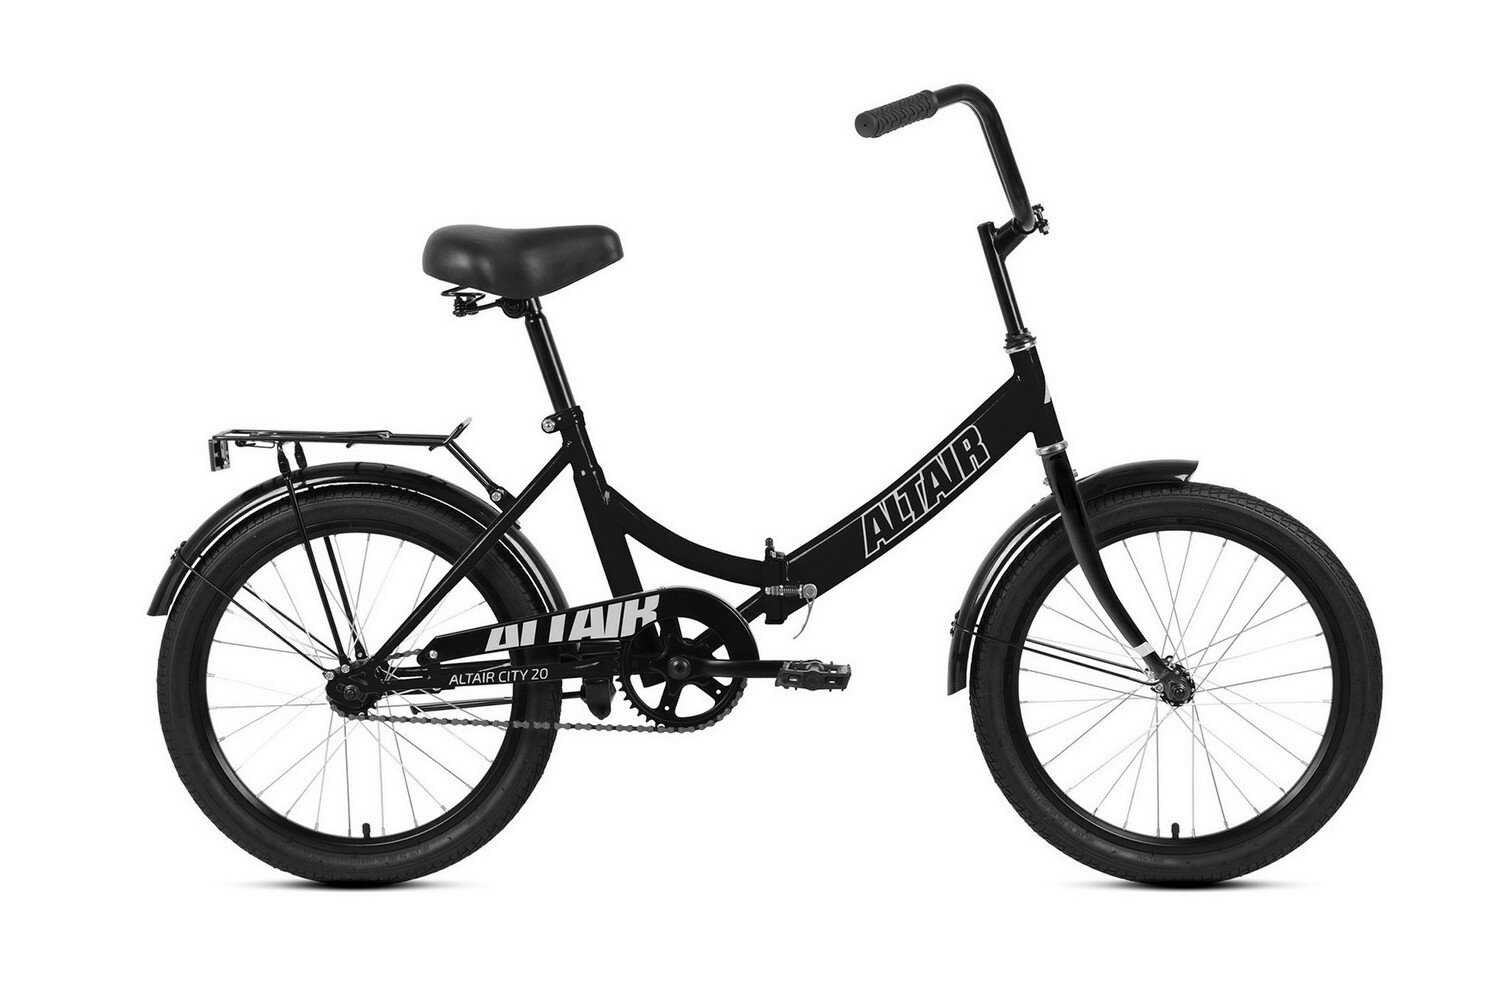 Складной велосипед Altair City 20, год 2022, ростовка 14, цвет Черный-Серебристый